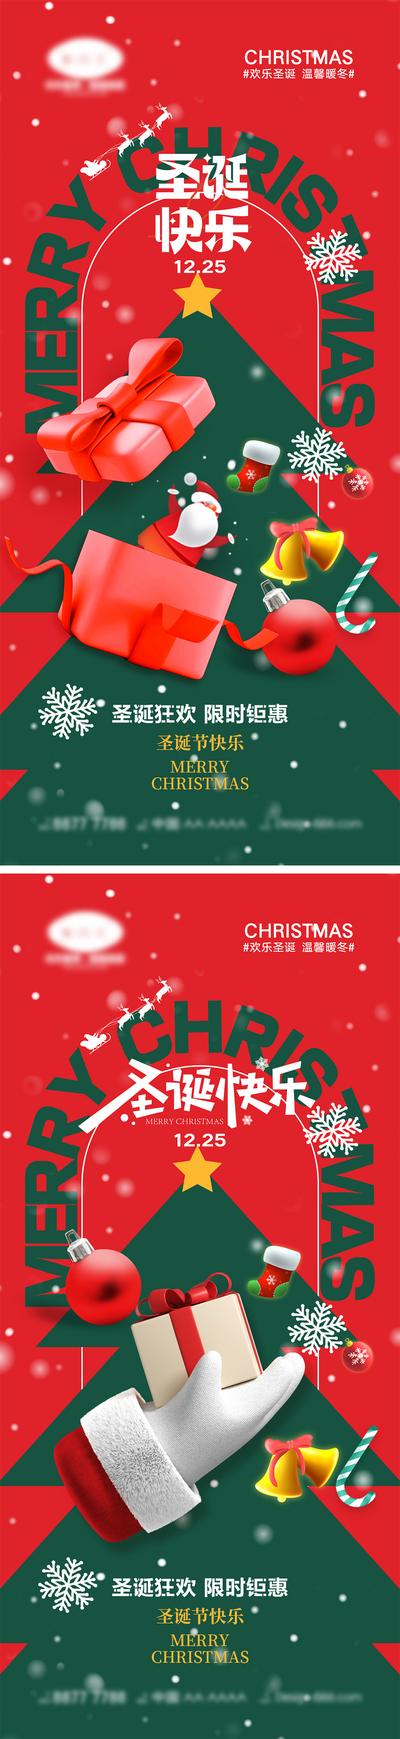 【南门网】海报 西方节日 圣诞节 平安夜 圣诞老人 礼物 麋鹿 圣诞树 下雪